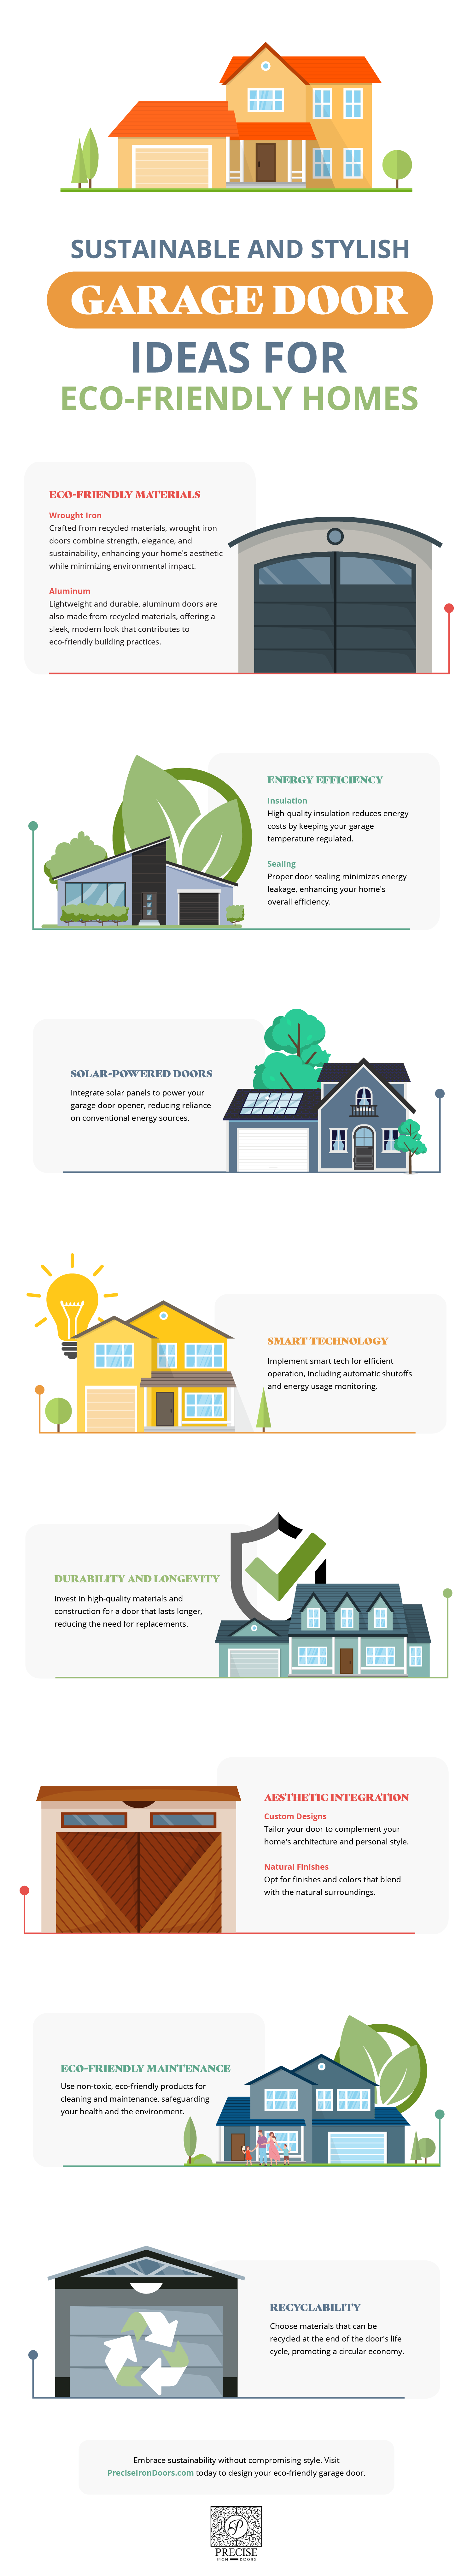 Eco-Friendly Garage Door Ideas Infographic